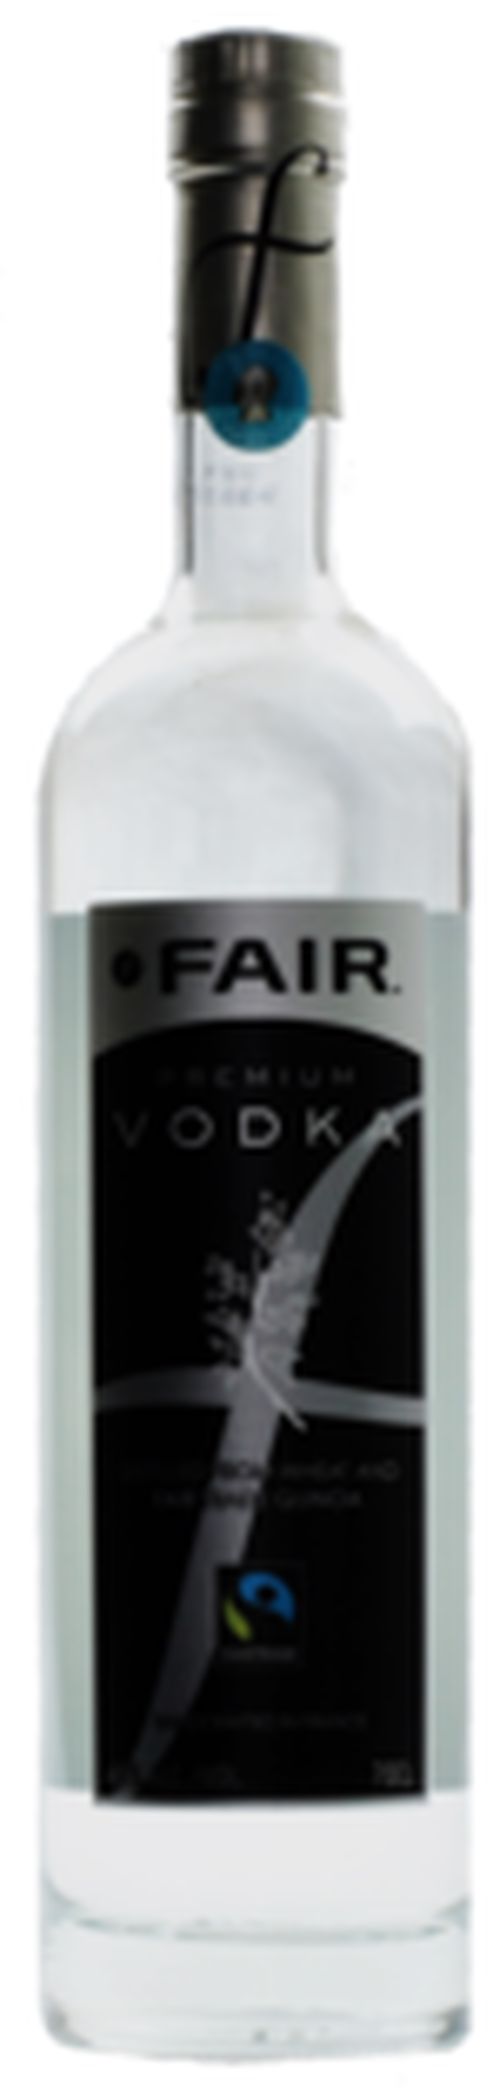 Fair Premium Vodka 40% 0,7l